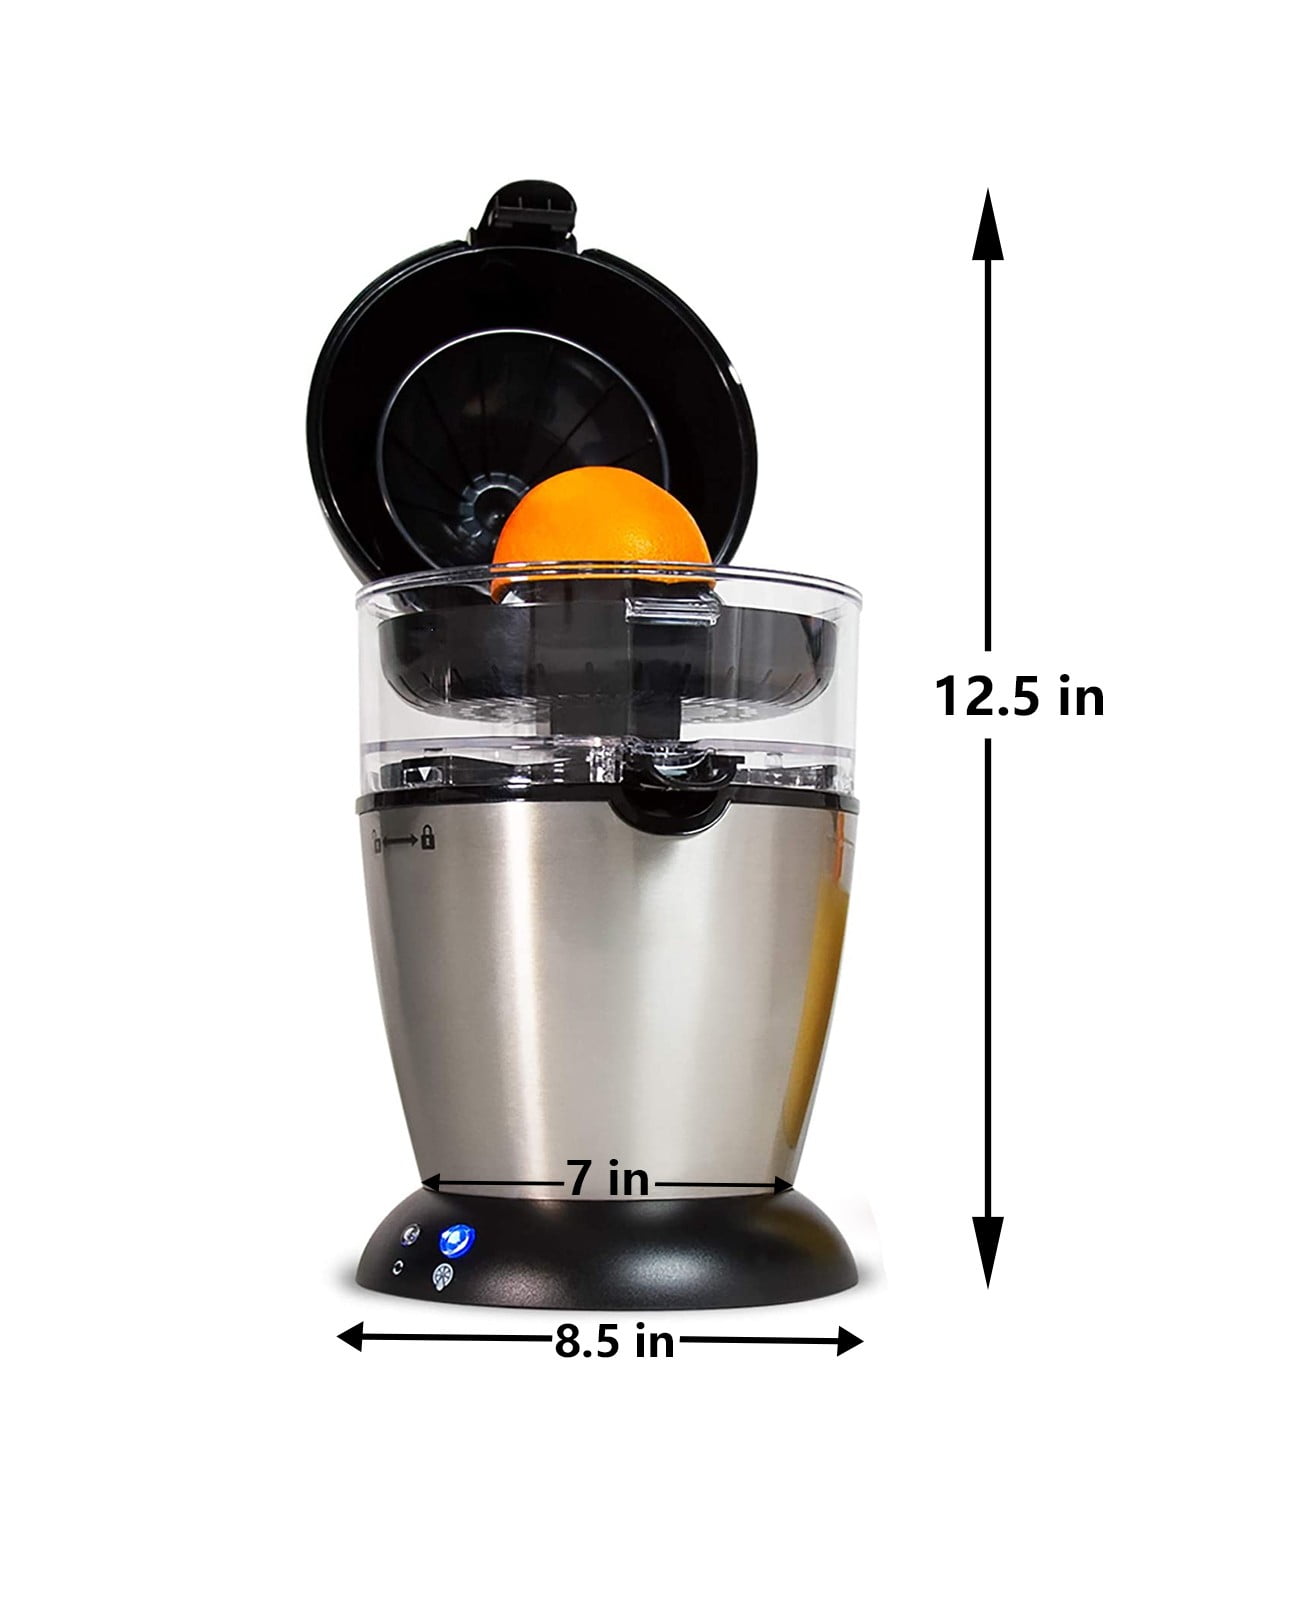 Electric Citrus Juicer Machine Orange Fruit Lemon – Appliances